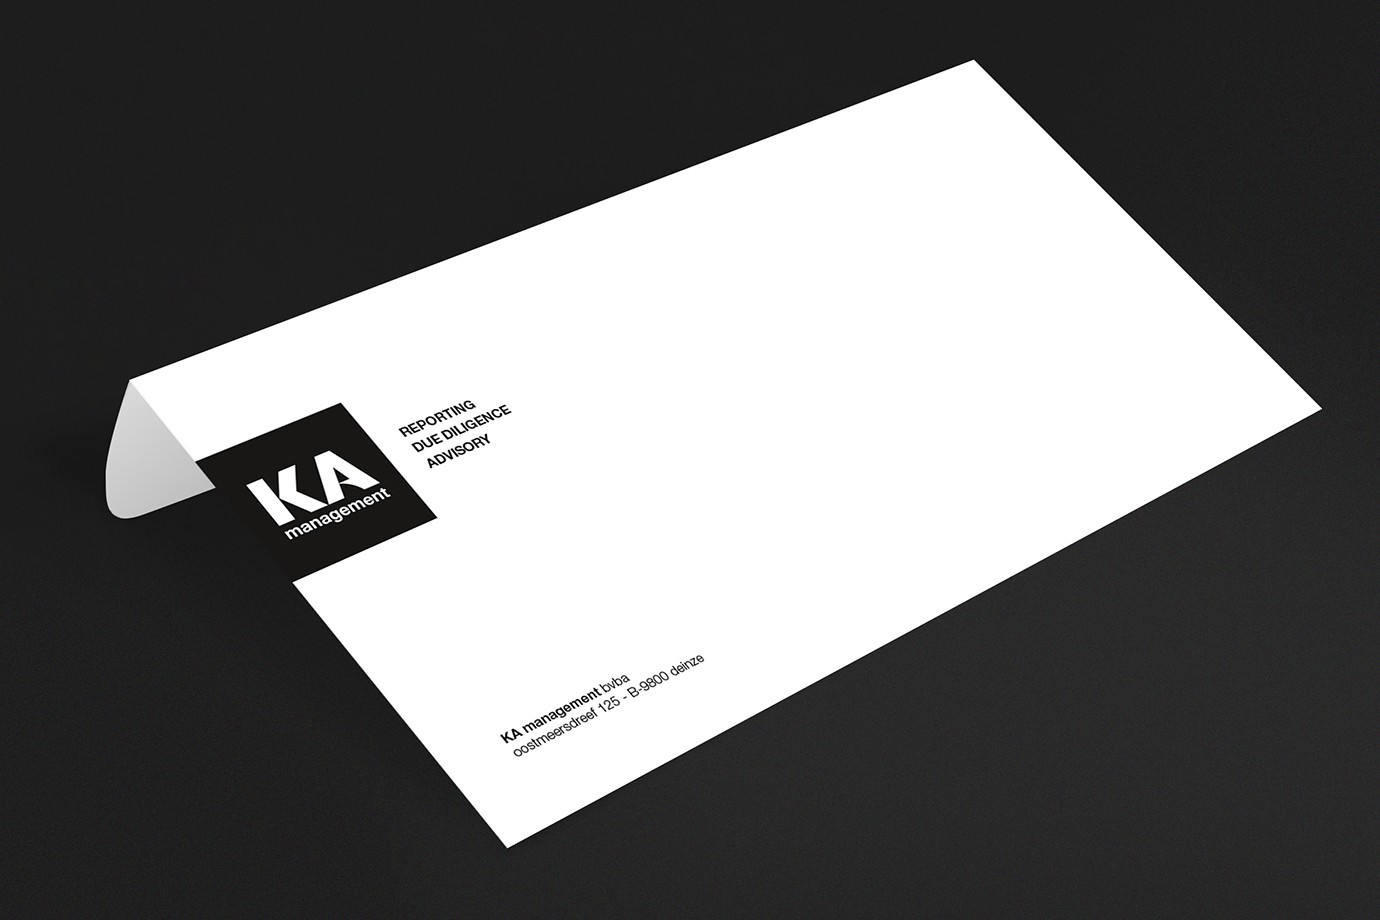 KA management envelop